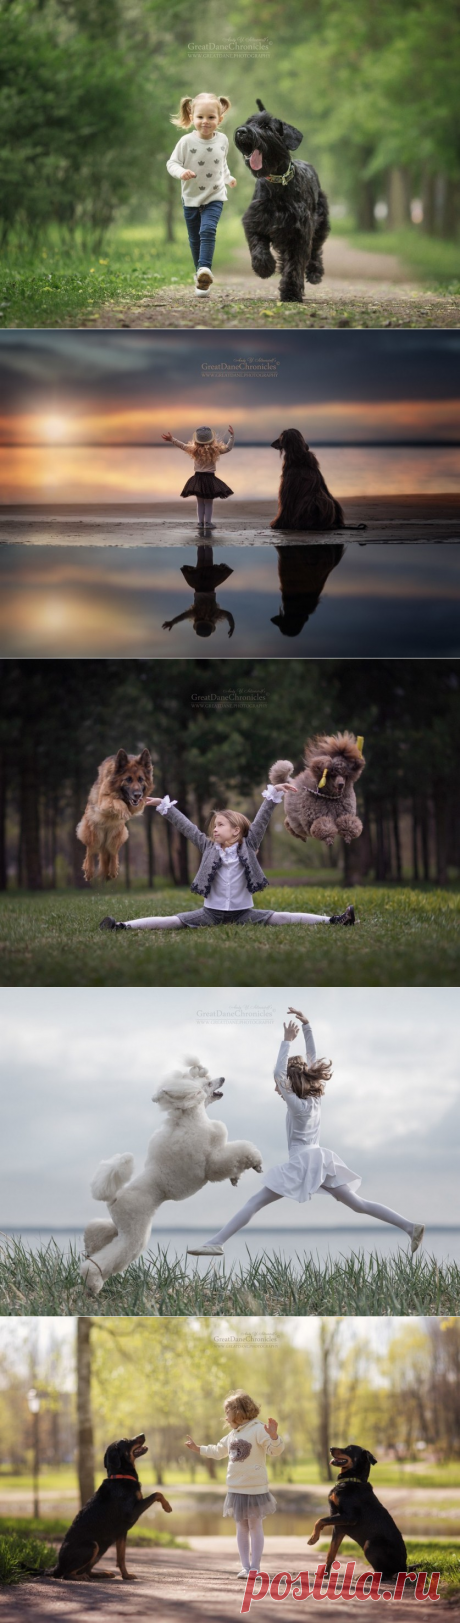 Эти фотографии вызывают умиление и улыбку!!! Детишки с собаками от Андрея Селиверстова | Фотоискусство